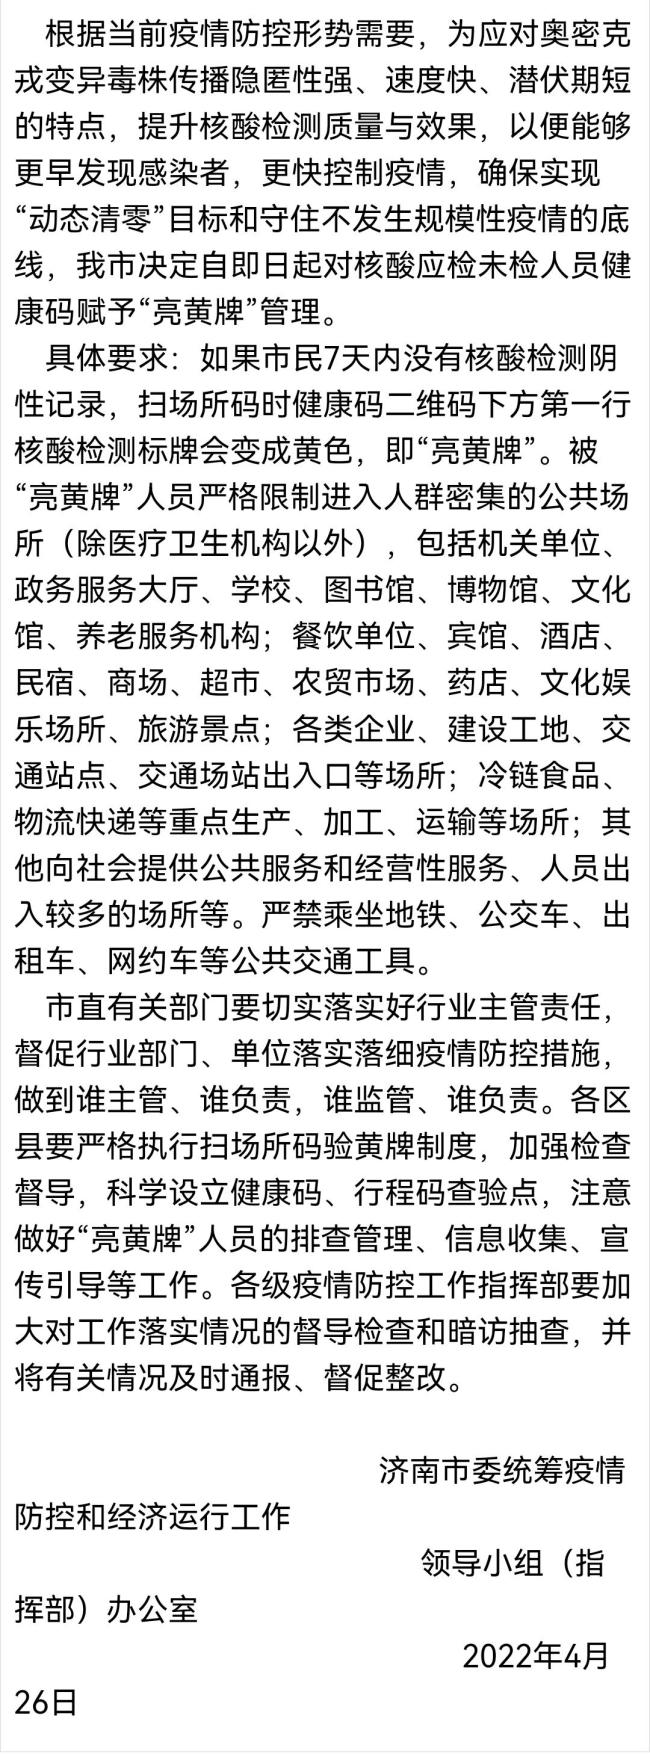 5月16日0至18时 天津新增新冠肺炎病例6+18 - 1xbet - 百度评论 百度热点快讯